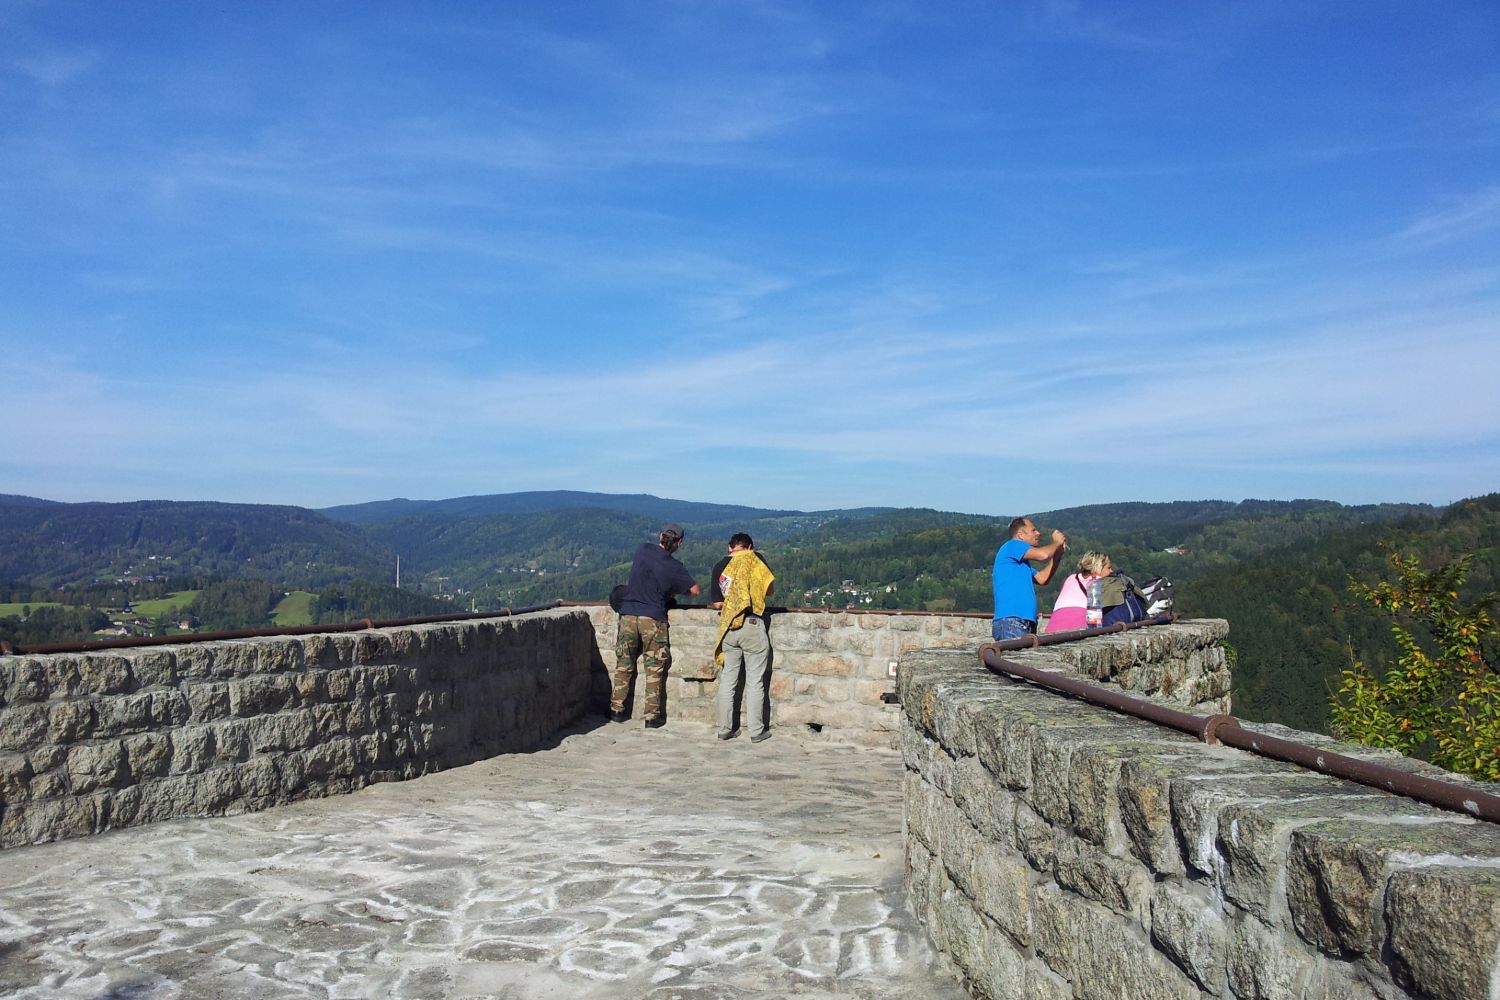 Turisté na kamenné terase skalní vyhlídky Terezínka nad městem Tanvald.